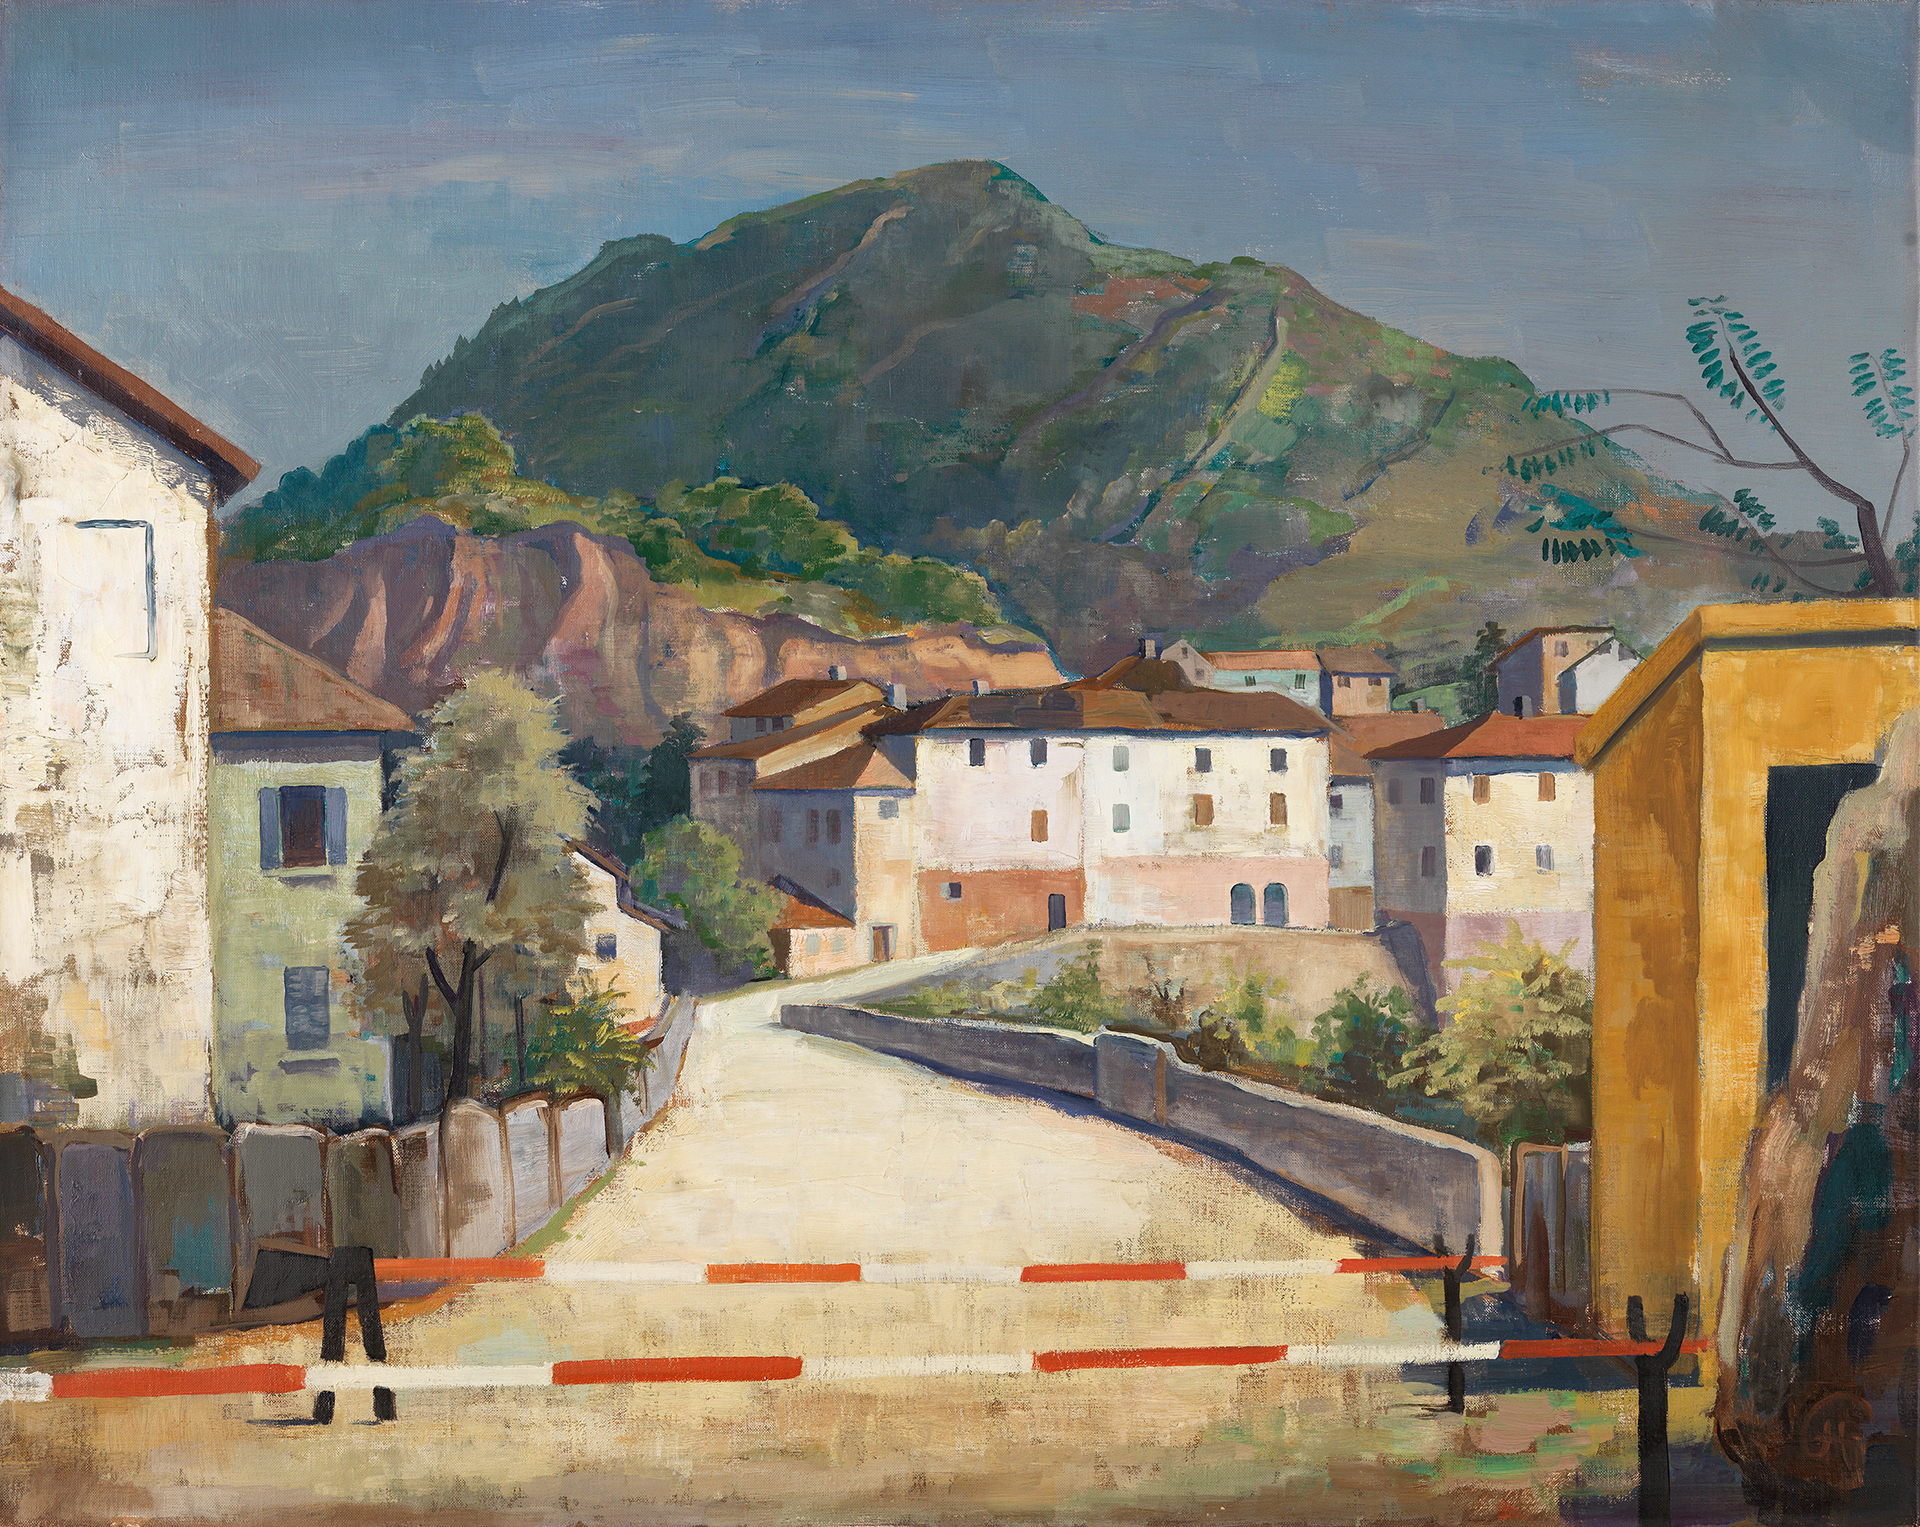 Gemälde von Karl Hofer. Hinter Schranken Ansicht einer Dorfstraße mit Häusern vor bergiger Kulisse.